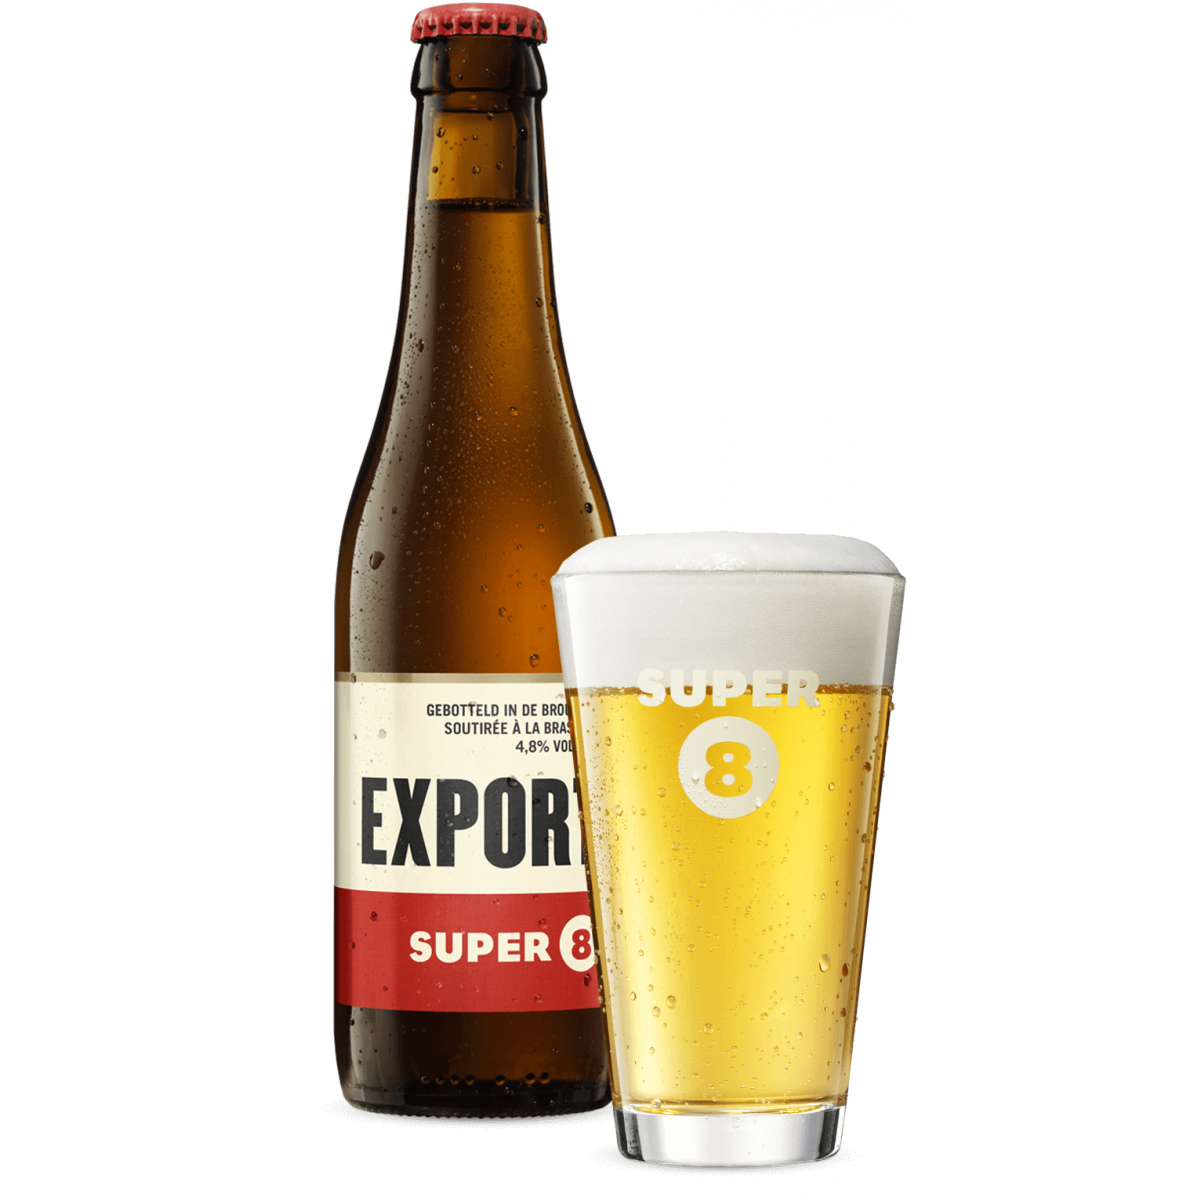 Super 8 Export